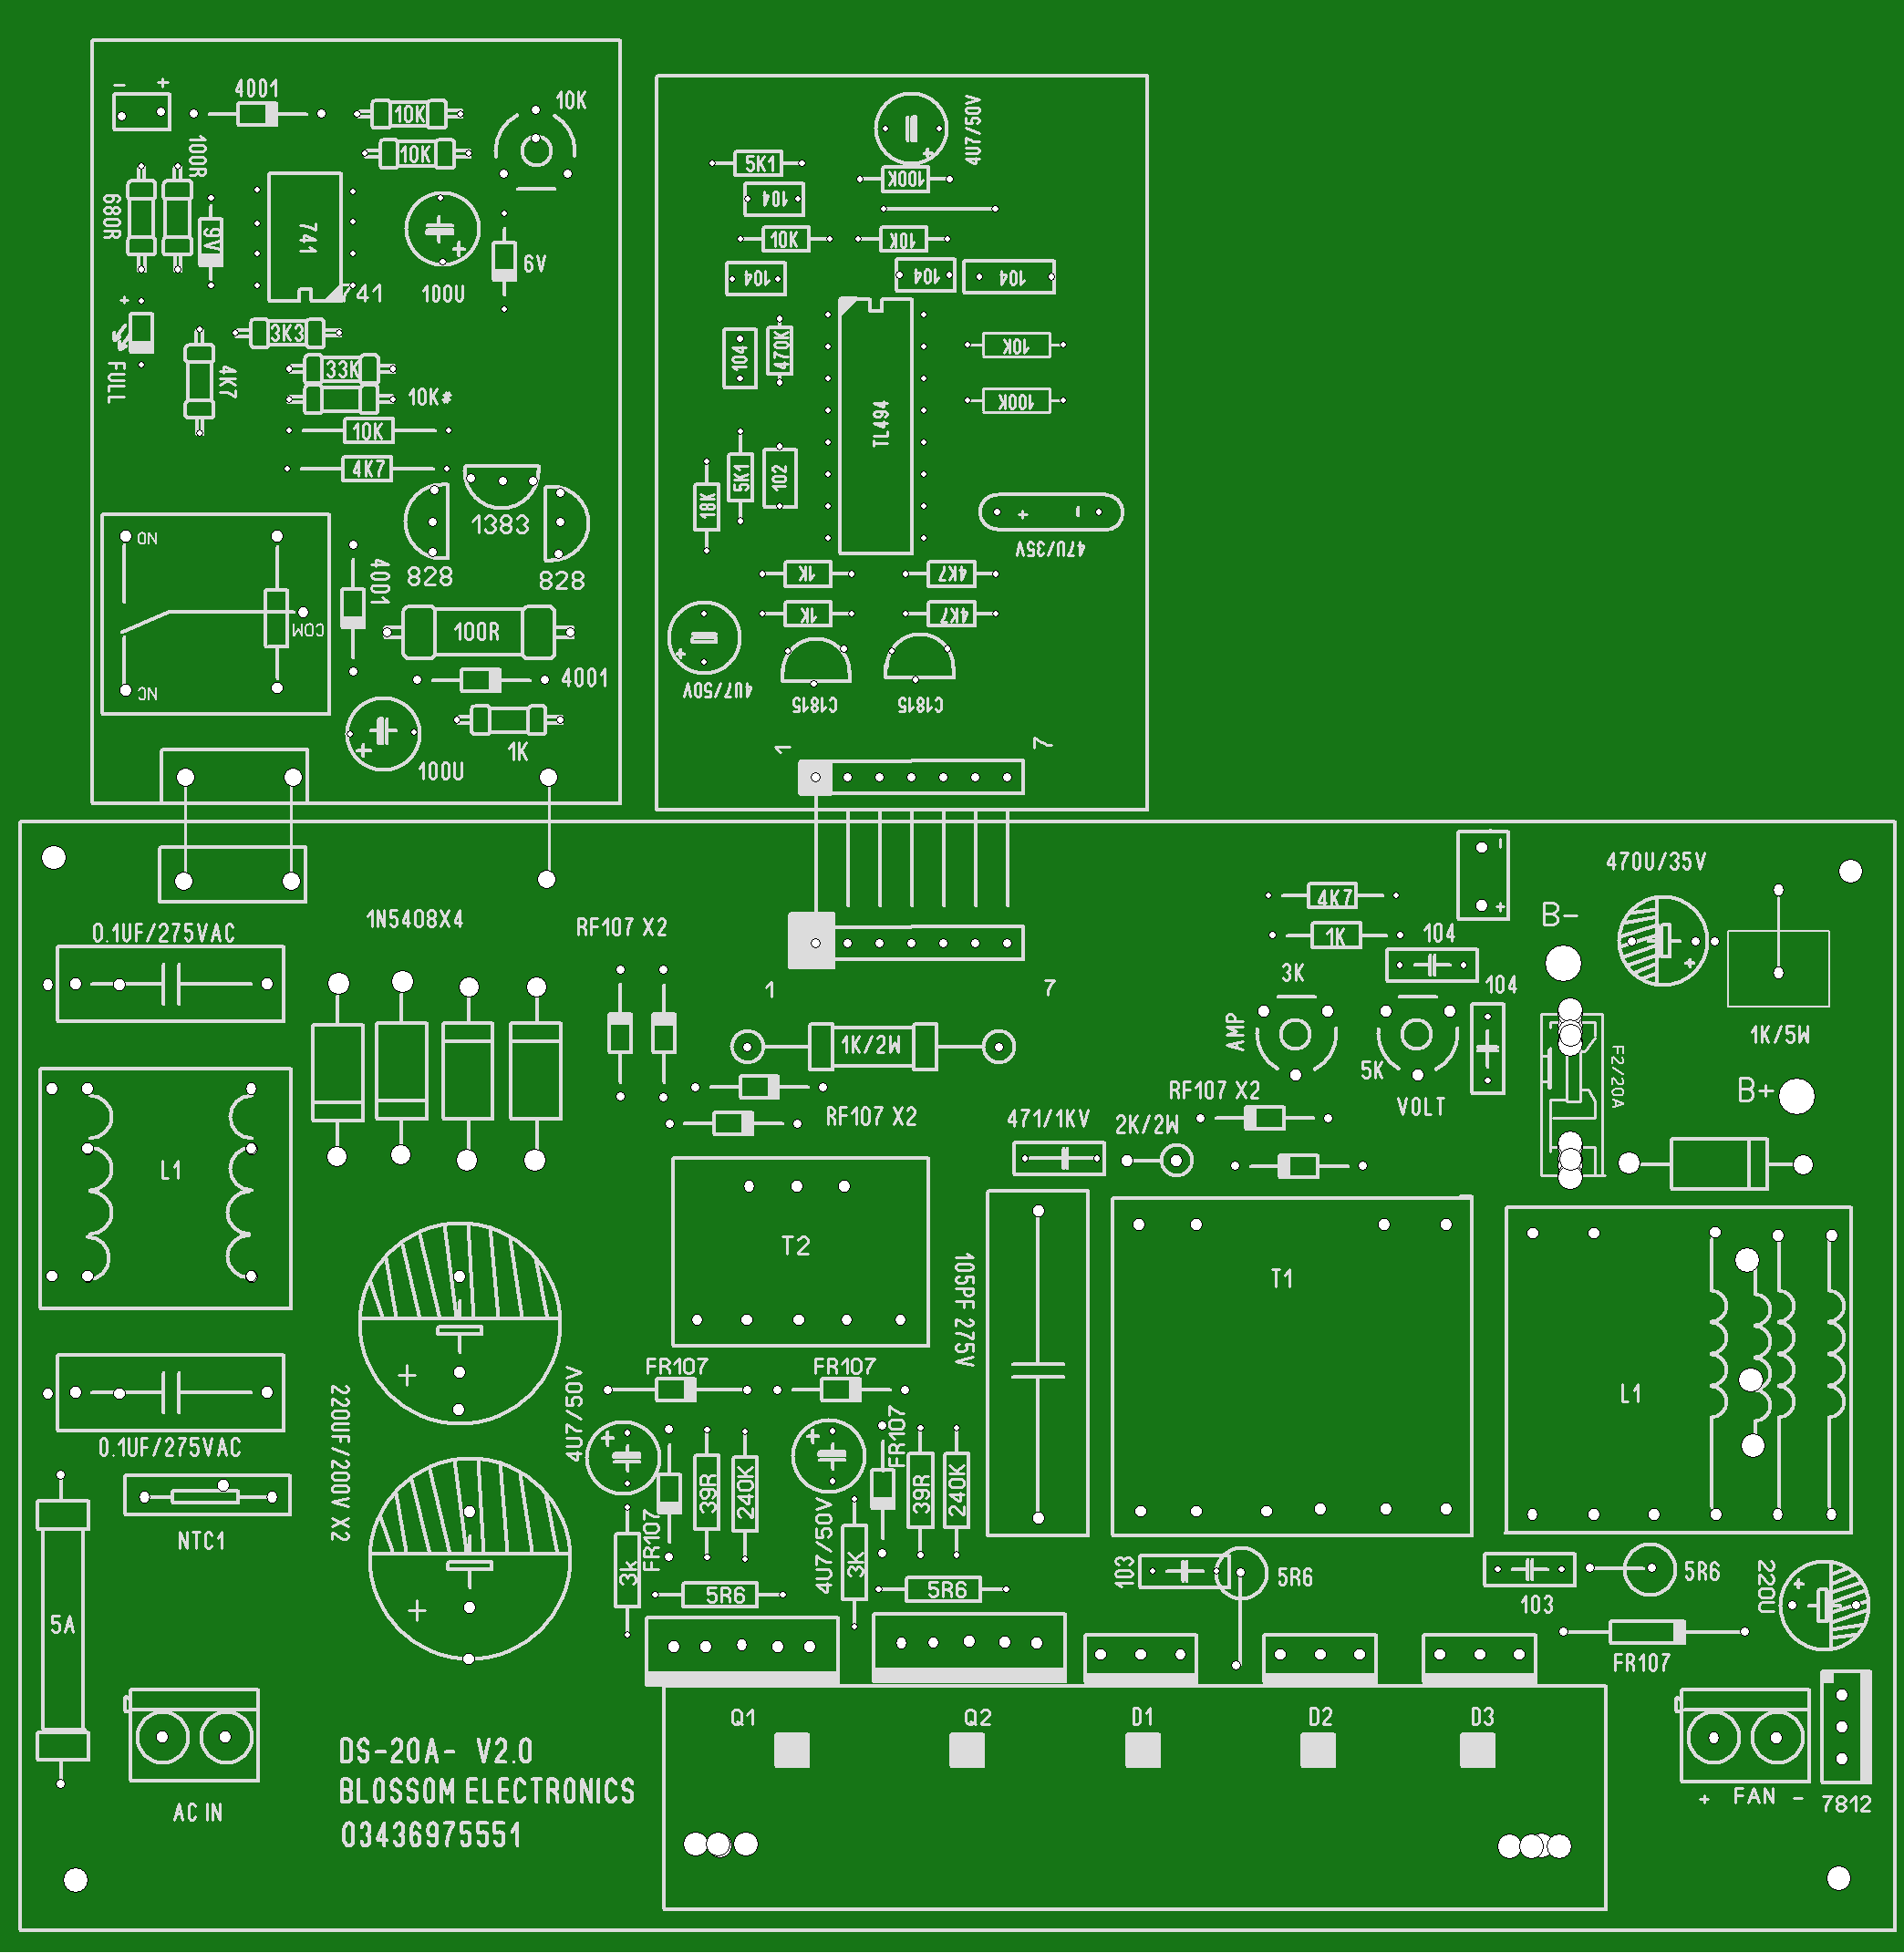 homage ups circuit diagram